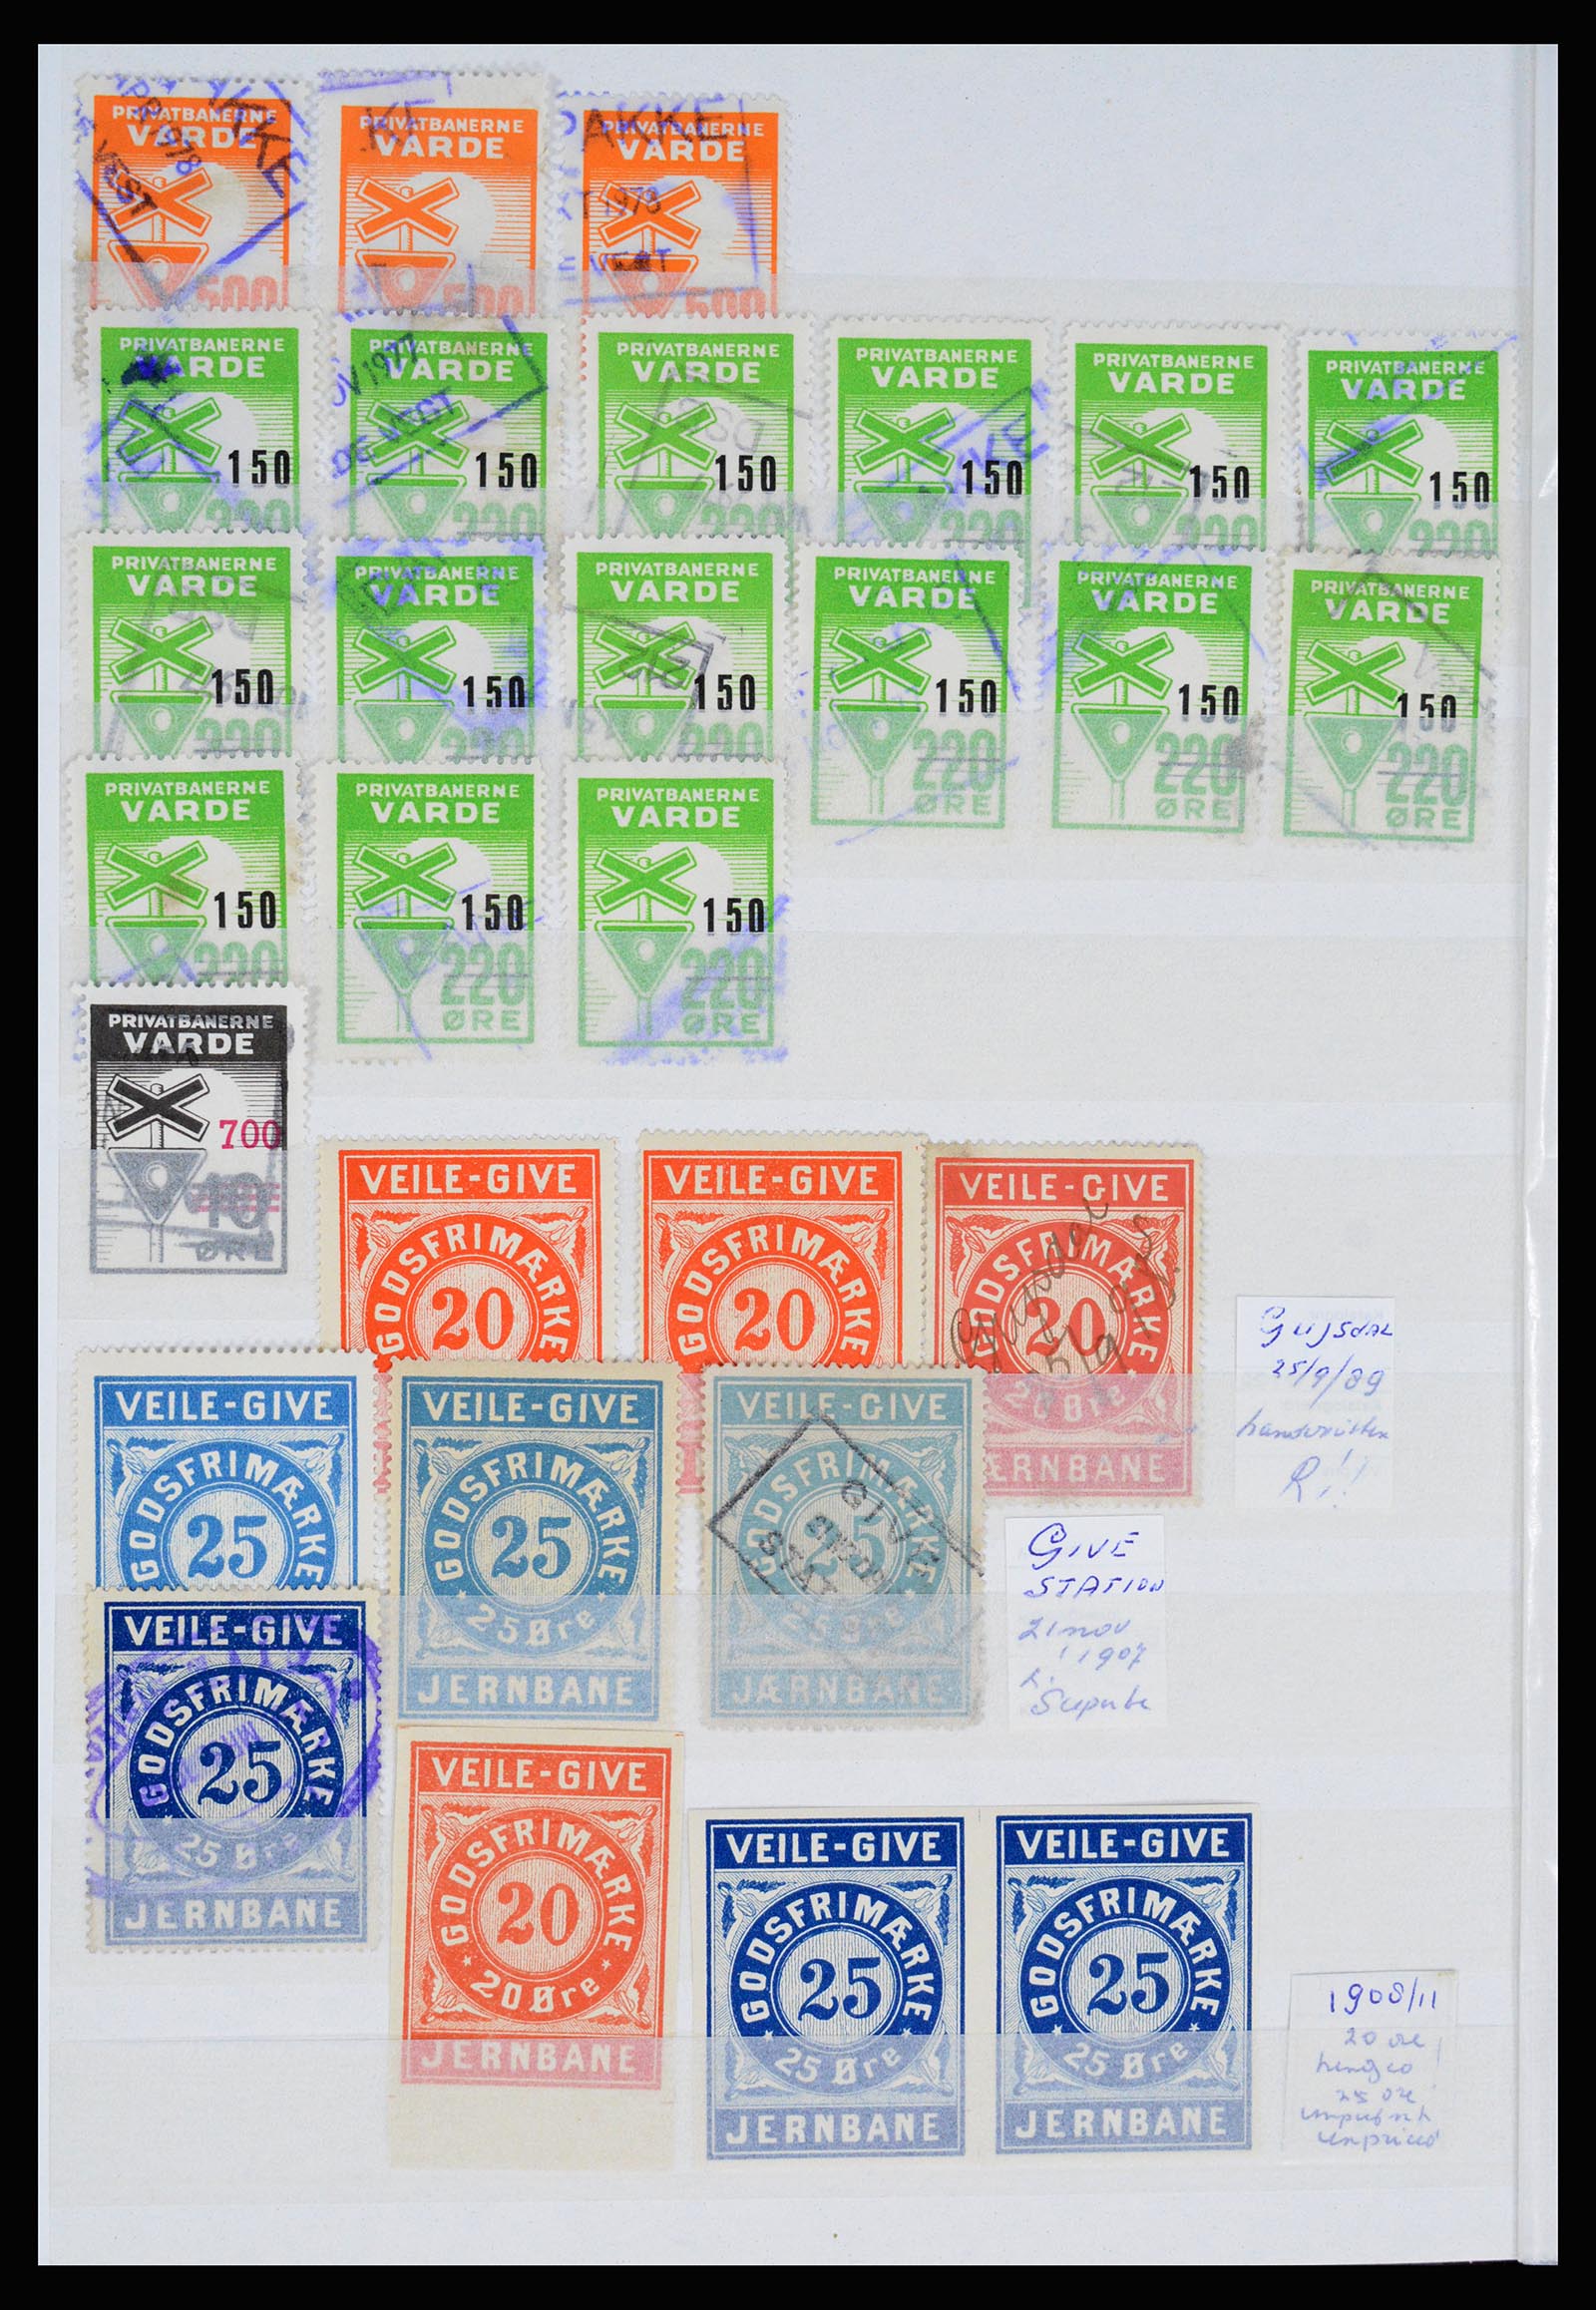 36982 133 - Postzegelverzameling 36982 Denemarken spoorwegzegels.